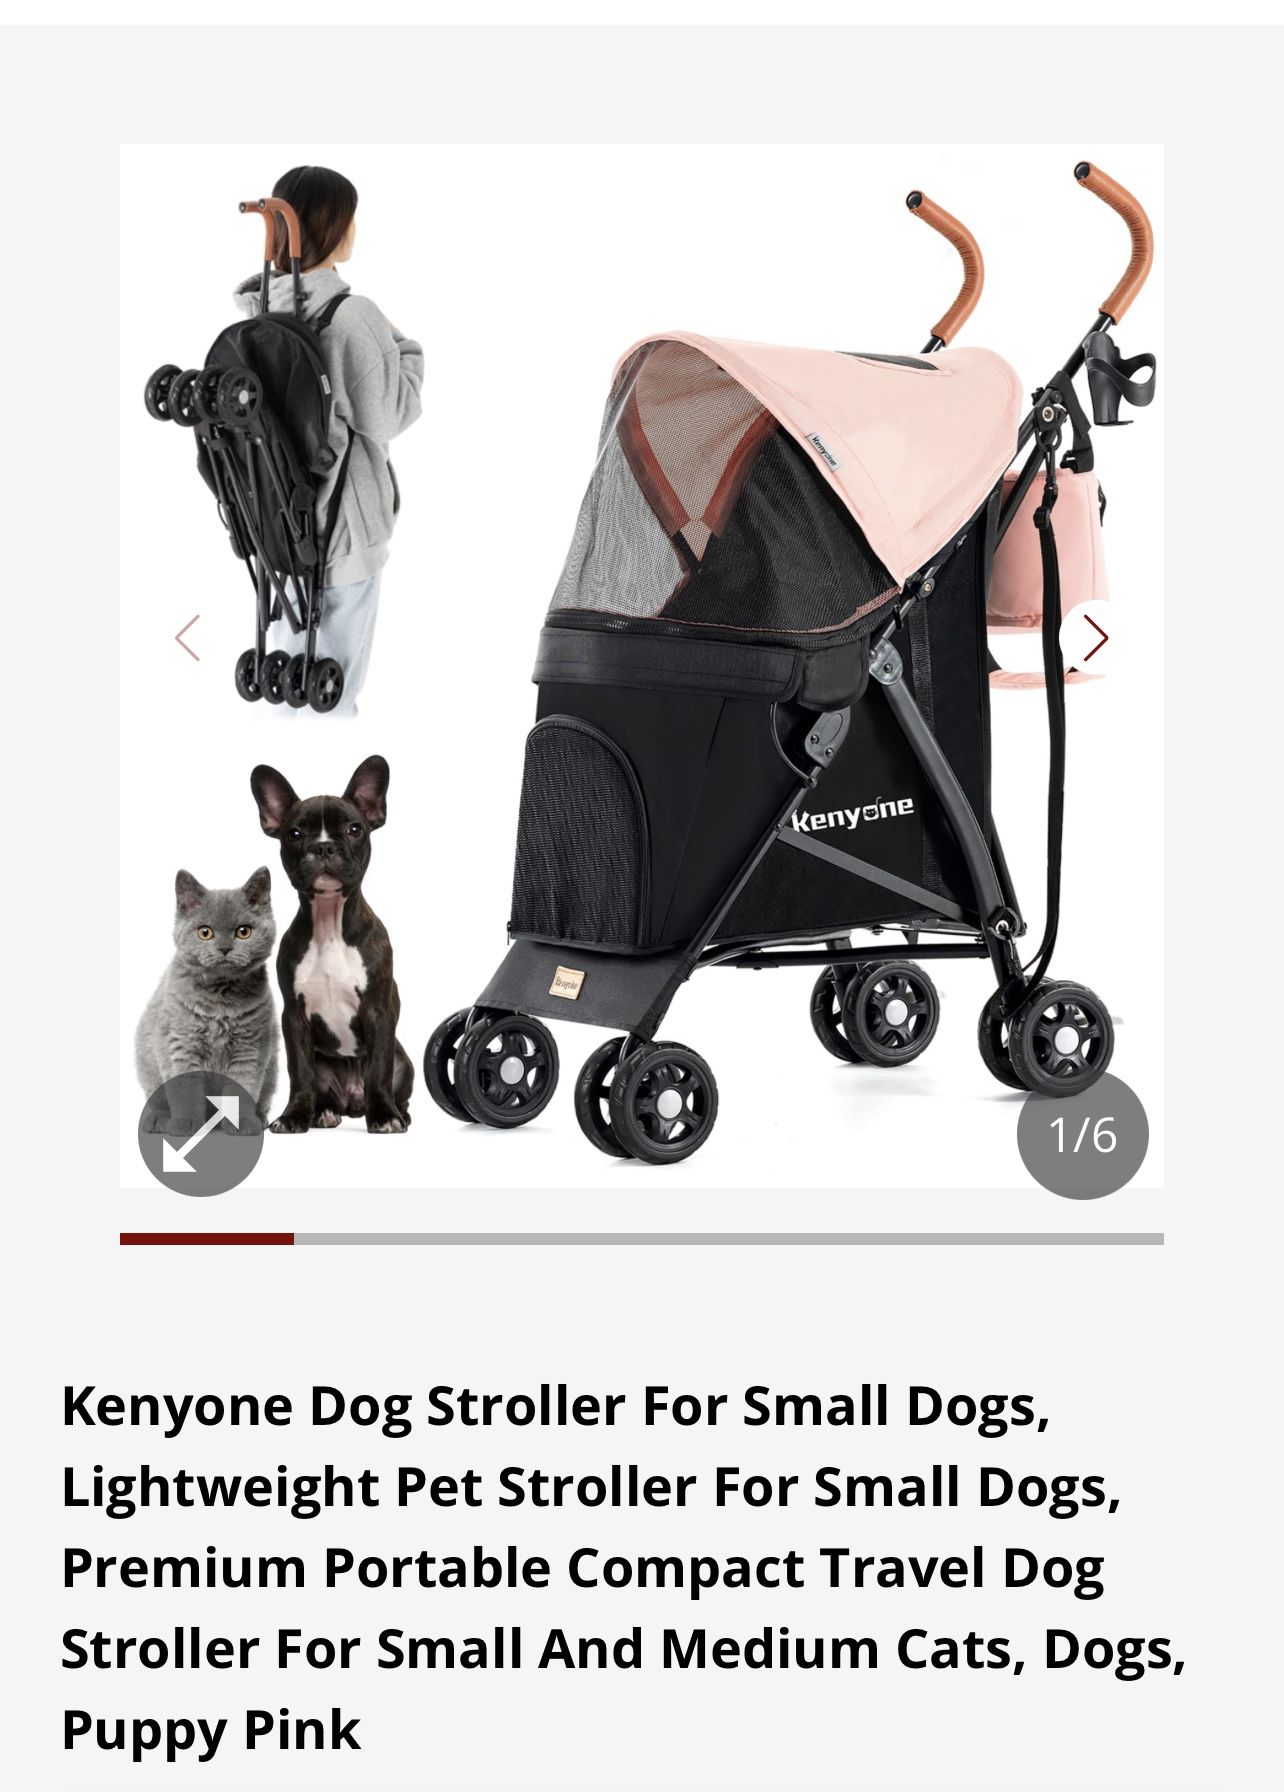 Kenyon Dog Stroller Dogs/Cats Lightweight Pink